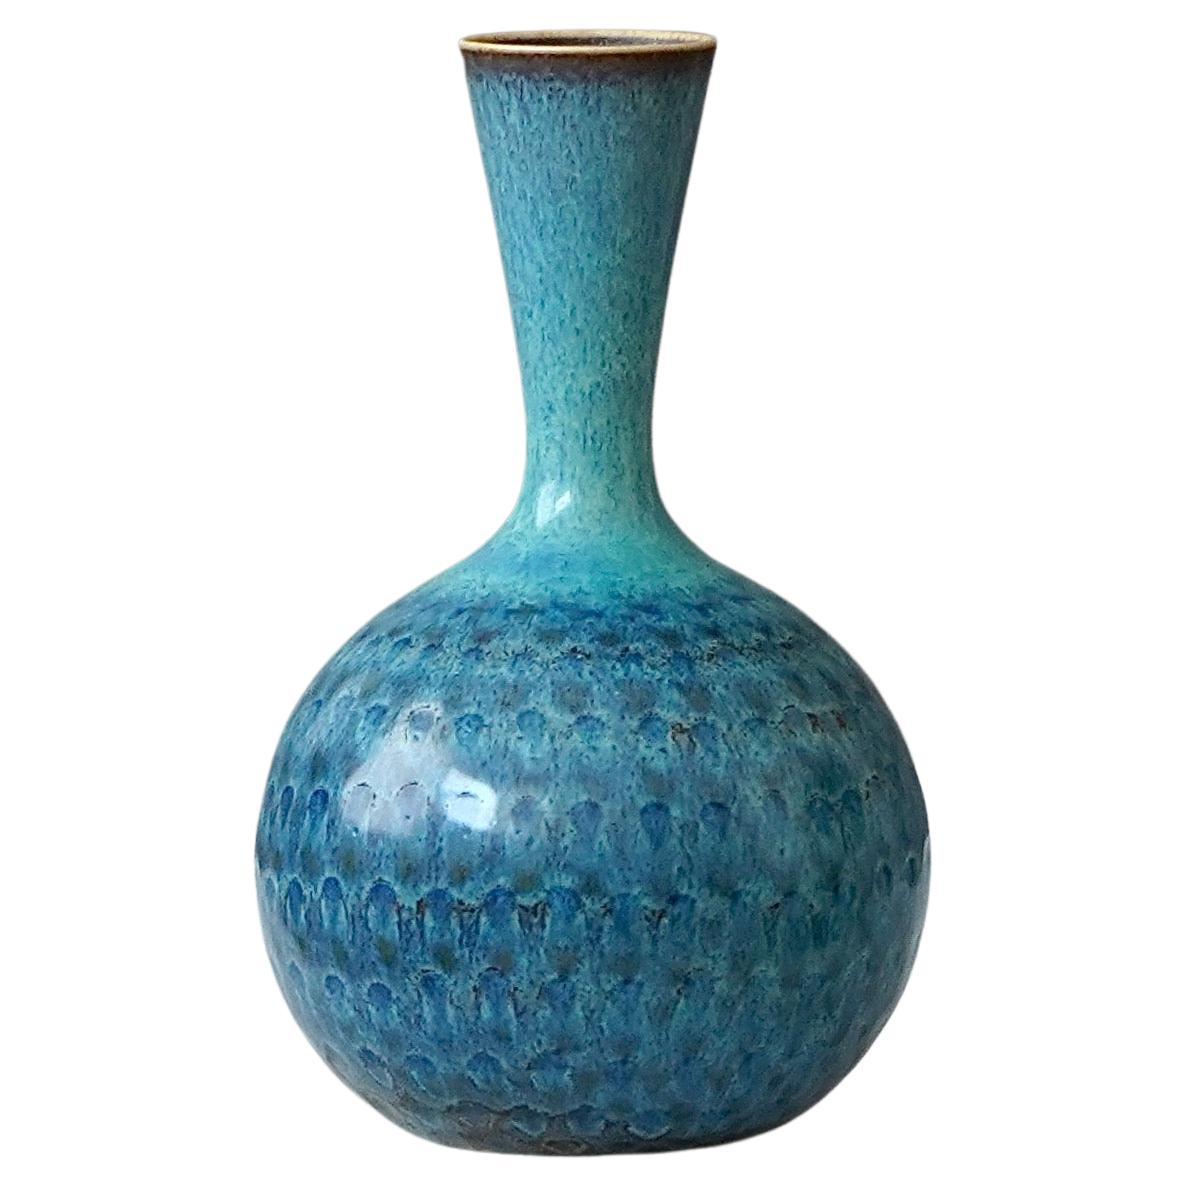 Stoneware Vase by Stig Lindberg for Gustavsberg Studio, Sweden, 1963